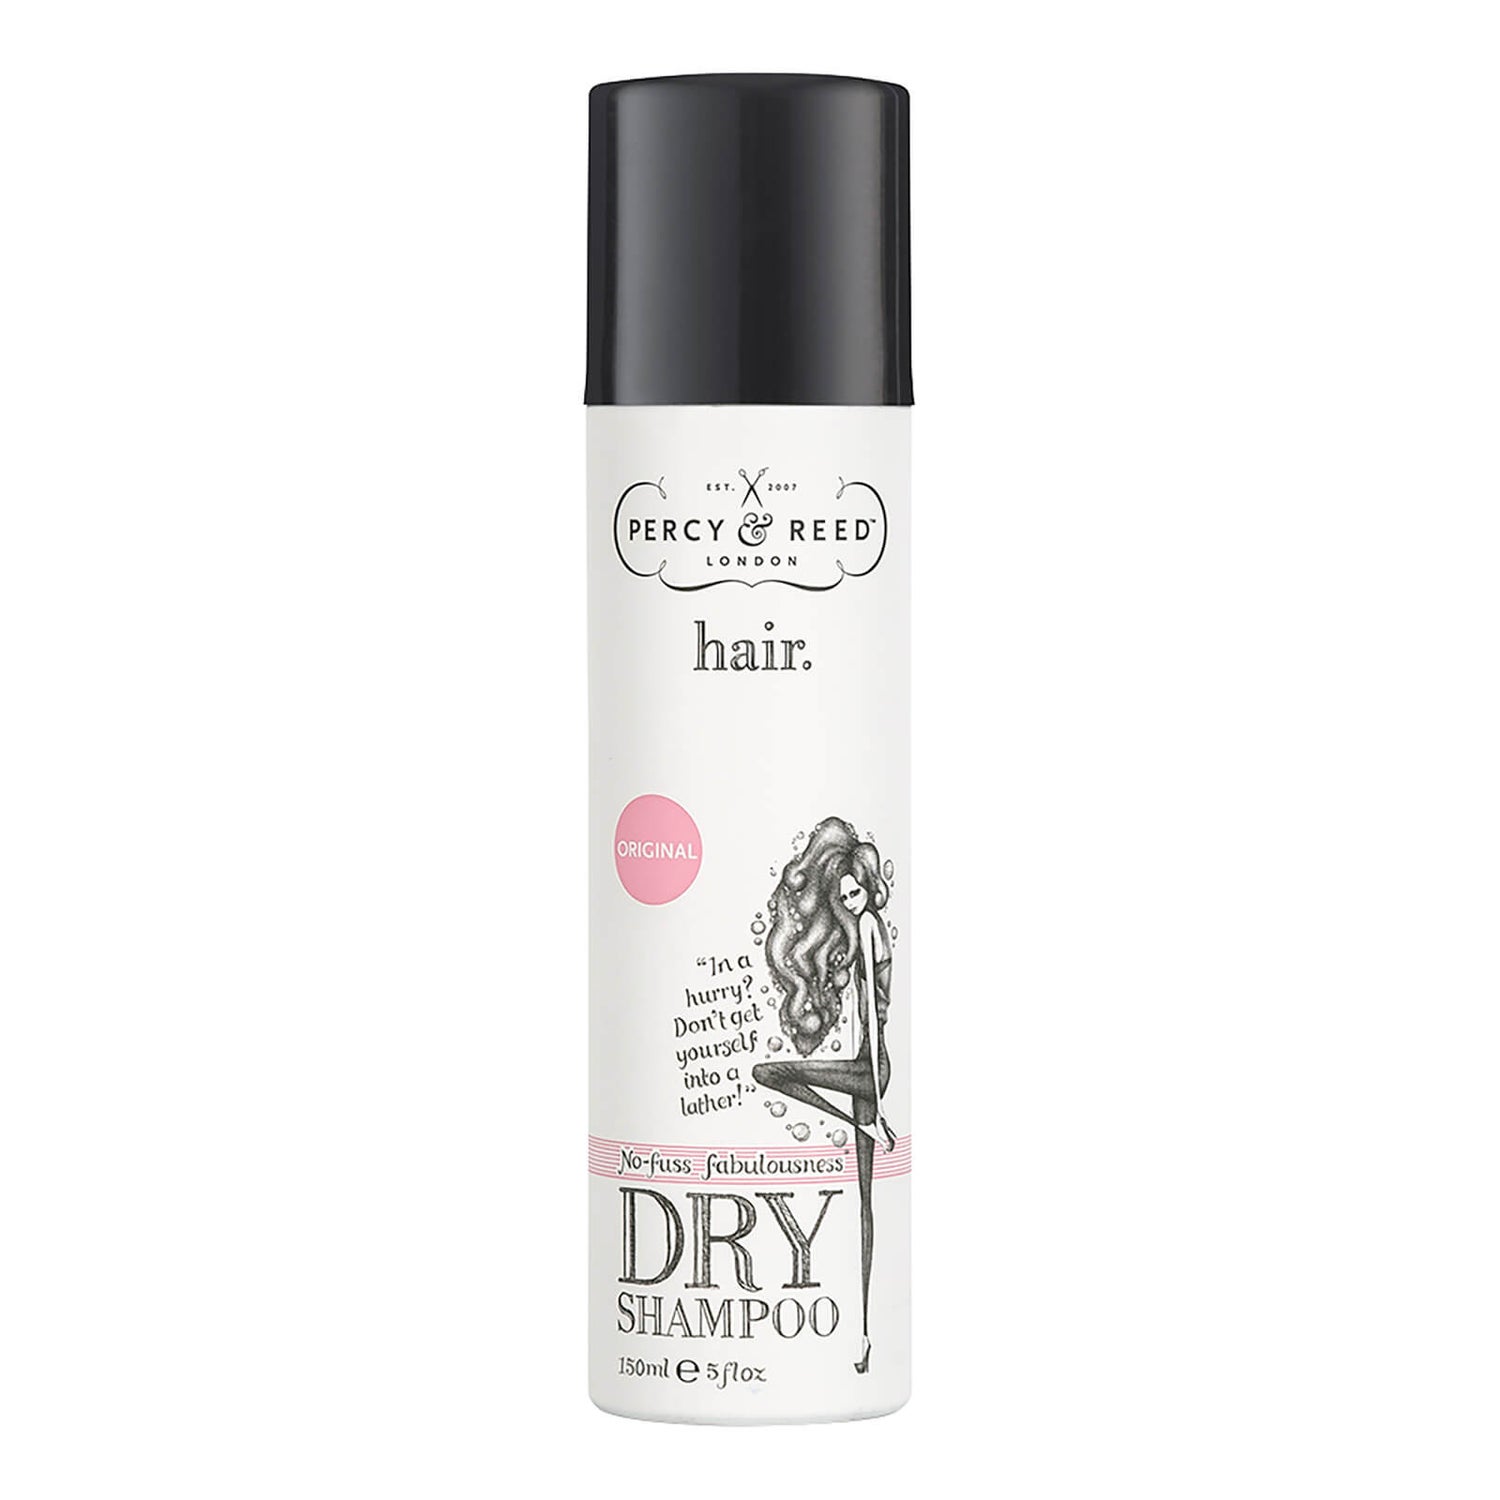 Percy & Reed No Fuss Fabulousness Dry Shampoo (150ml)